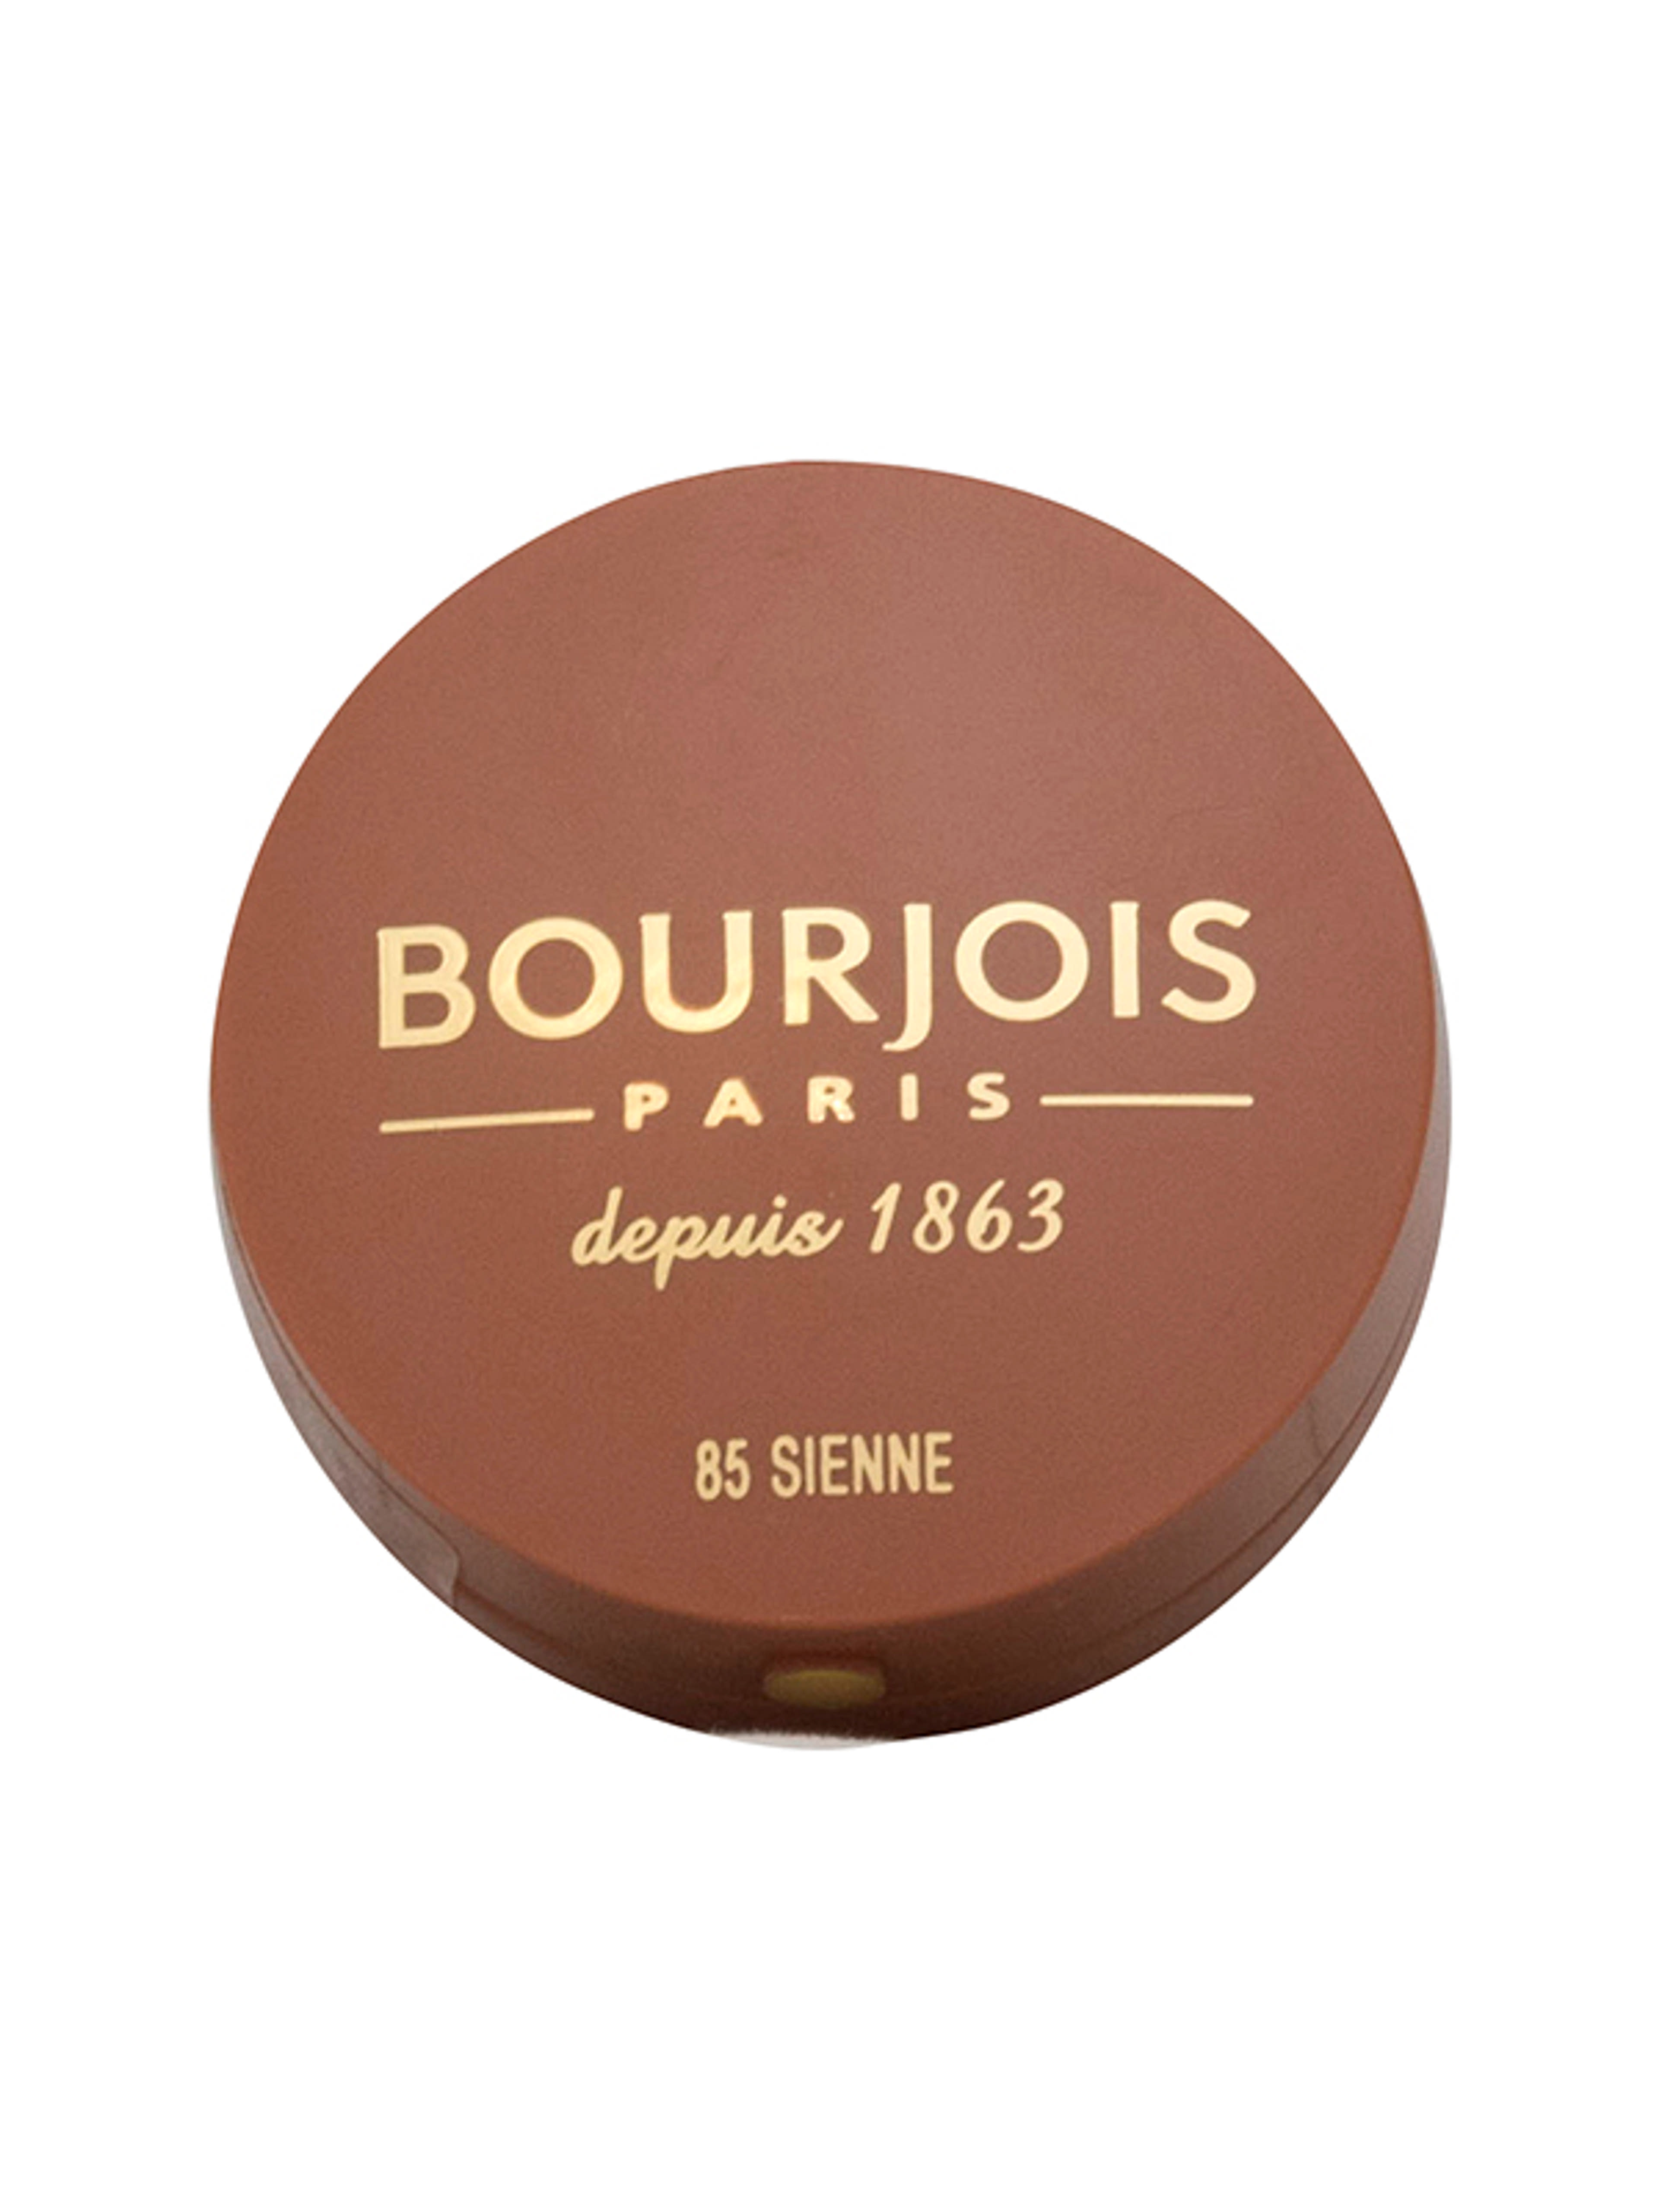 Bourjois Little Round Pot pirosító /85 - 1 db-1